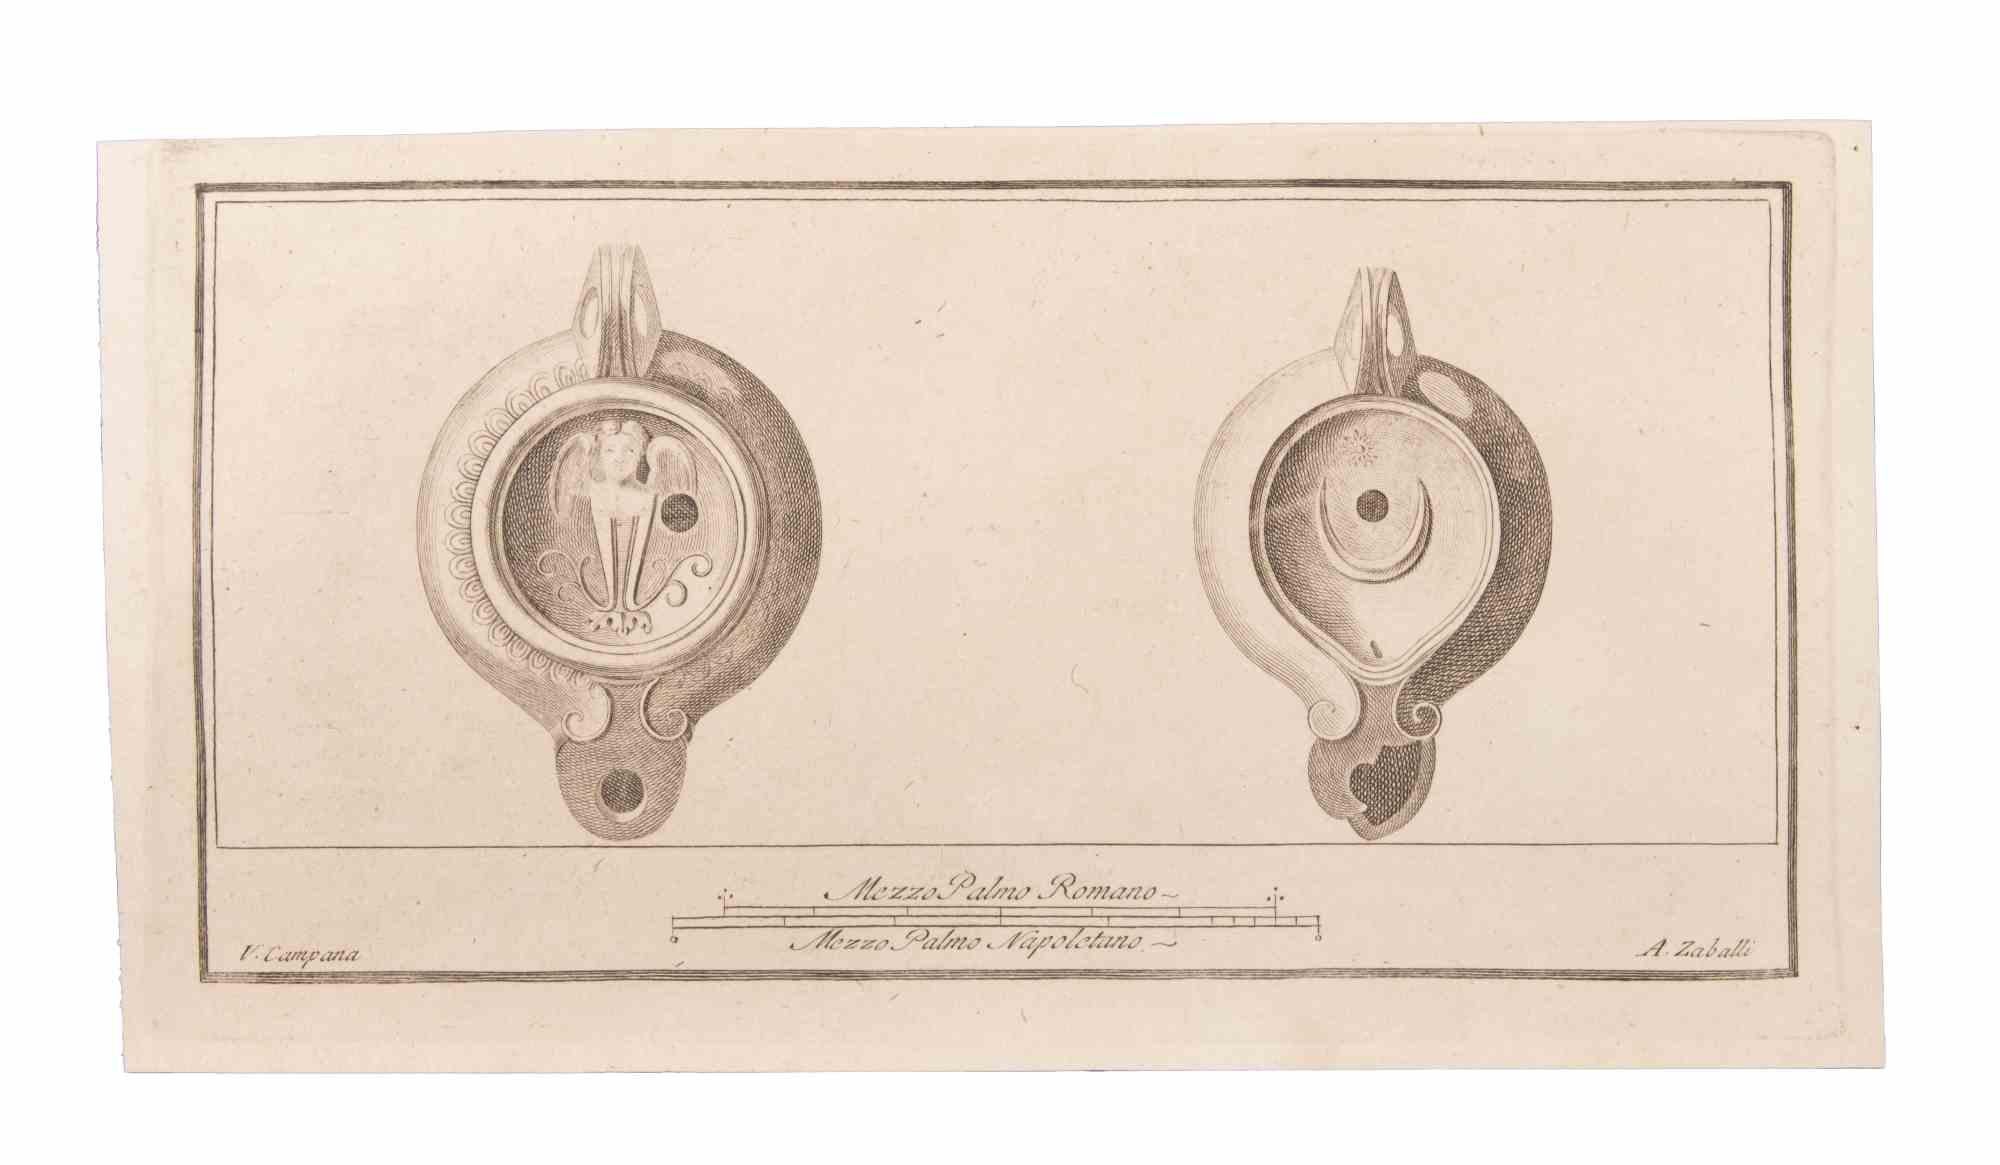 Lampe à huile à suspendre est une gravure réalisée par Vincenzo Campana (1730-1806).

La gravure appartient à la suite d'estampes "Antiquités d'Herculanum exposées" (titre original : "Le Antichità di Ercolano Esposte"), un volume de huit gravures